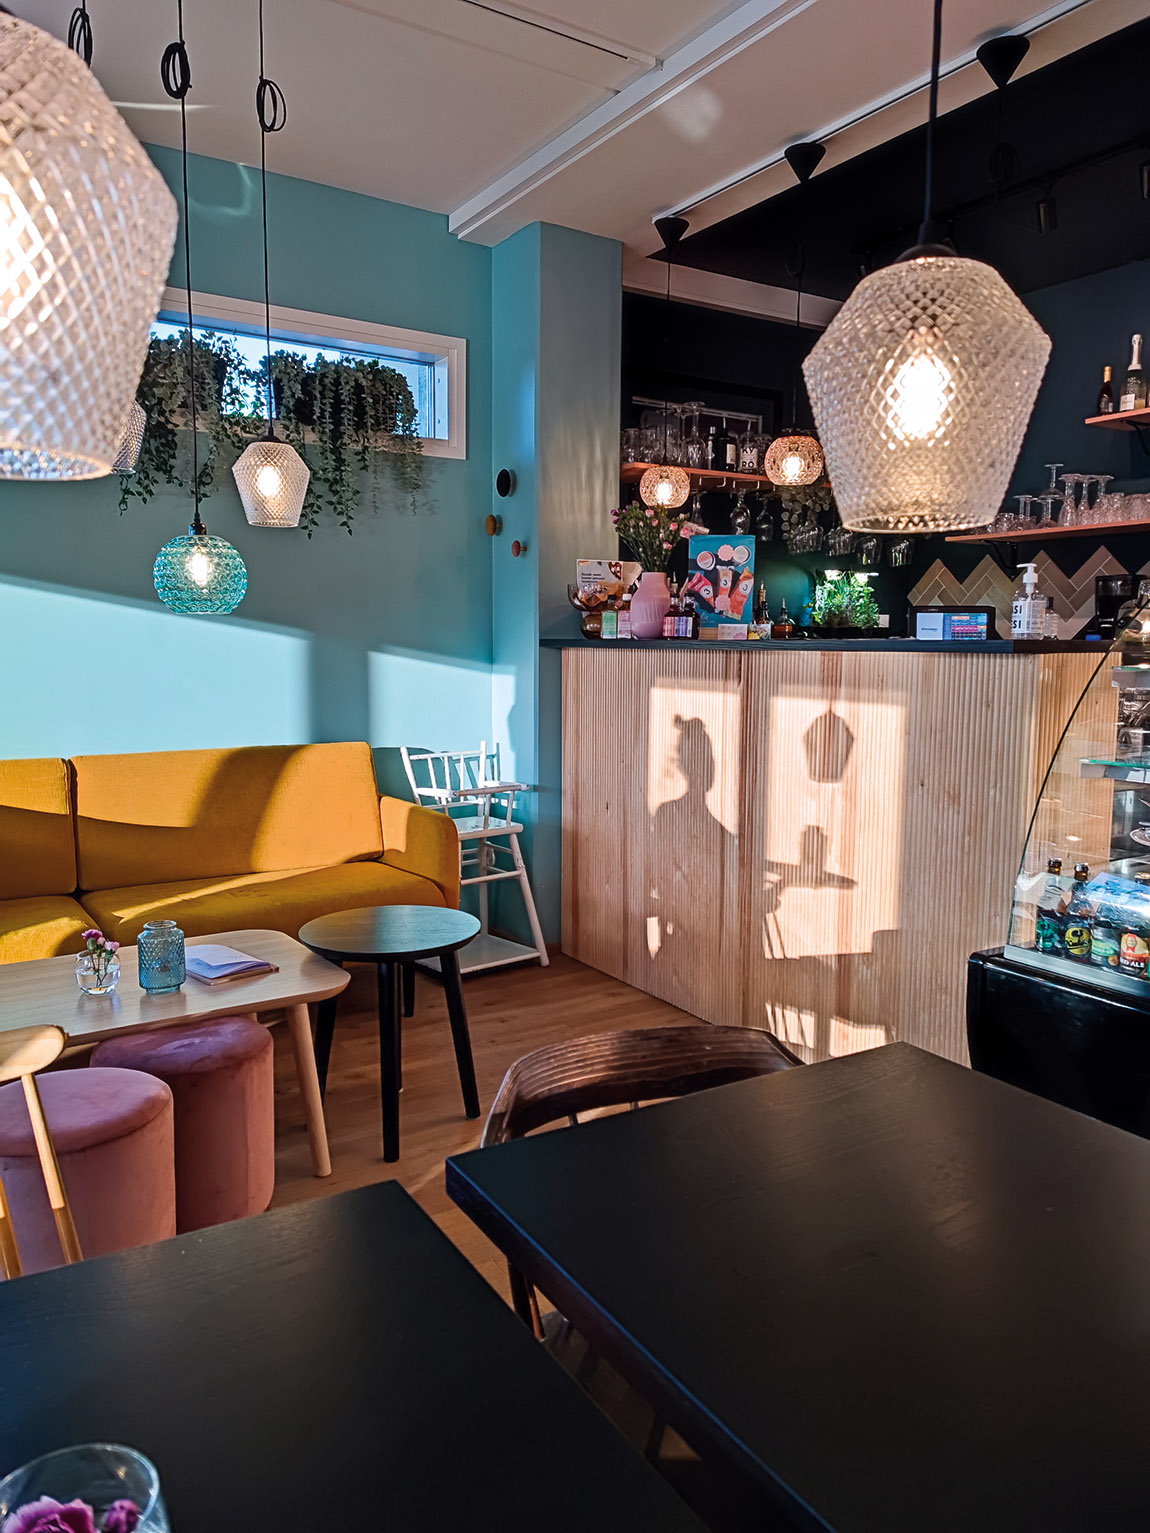 Jolie Lounge & Café: A European café with a Lappish twist